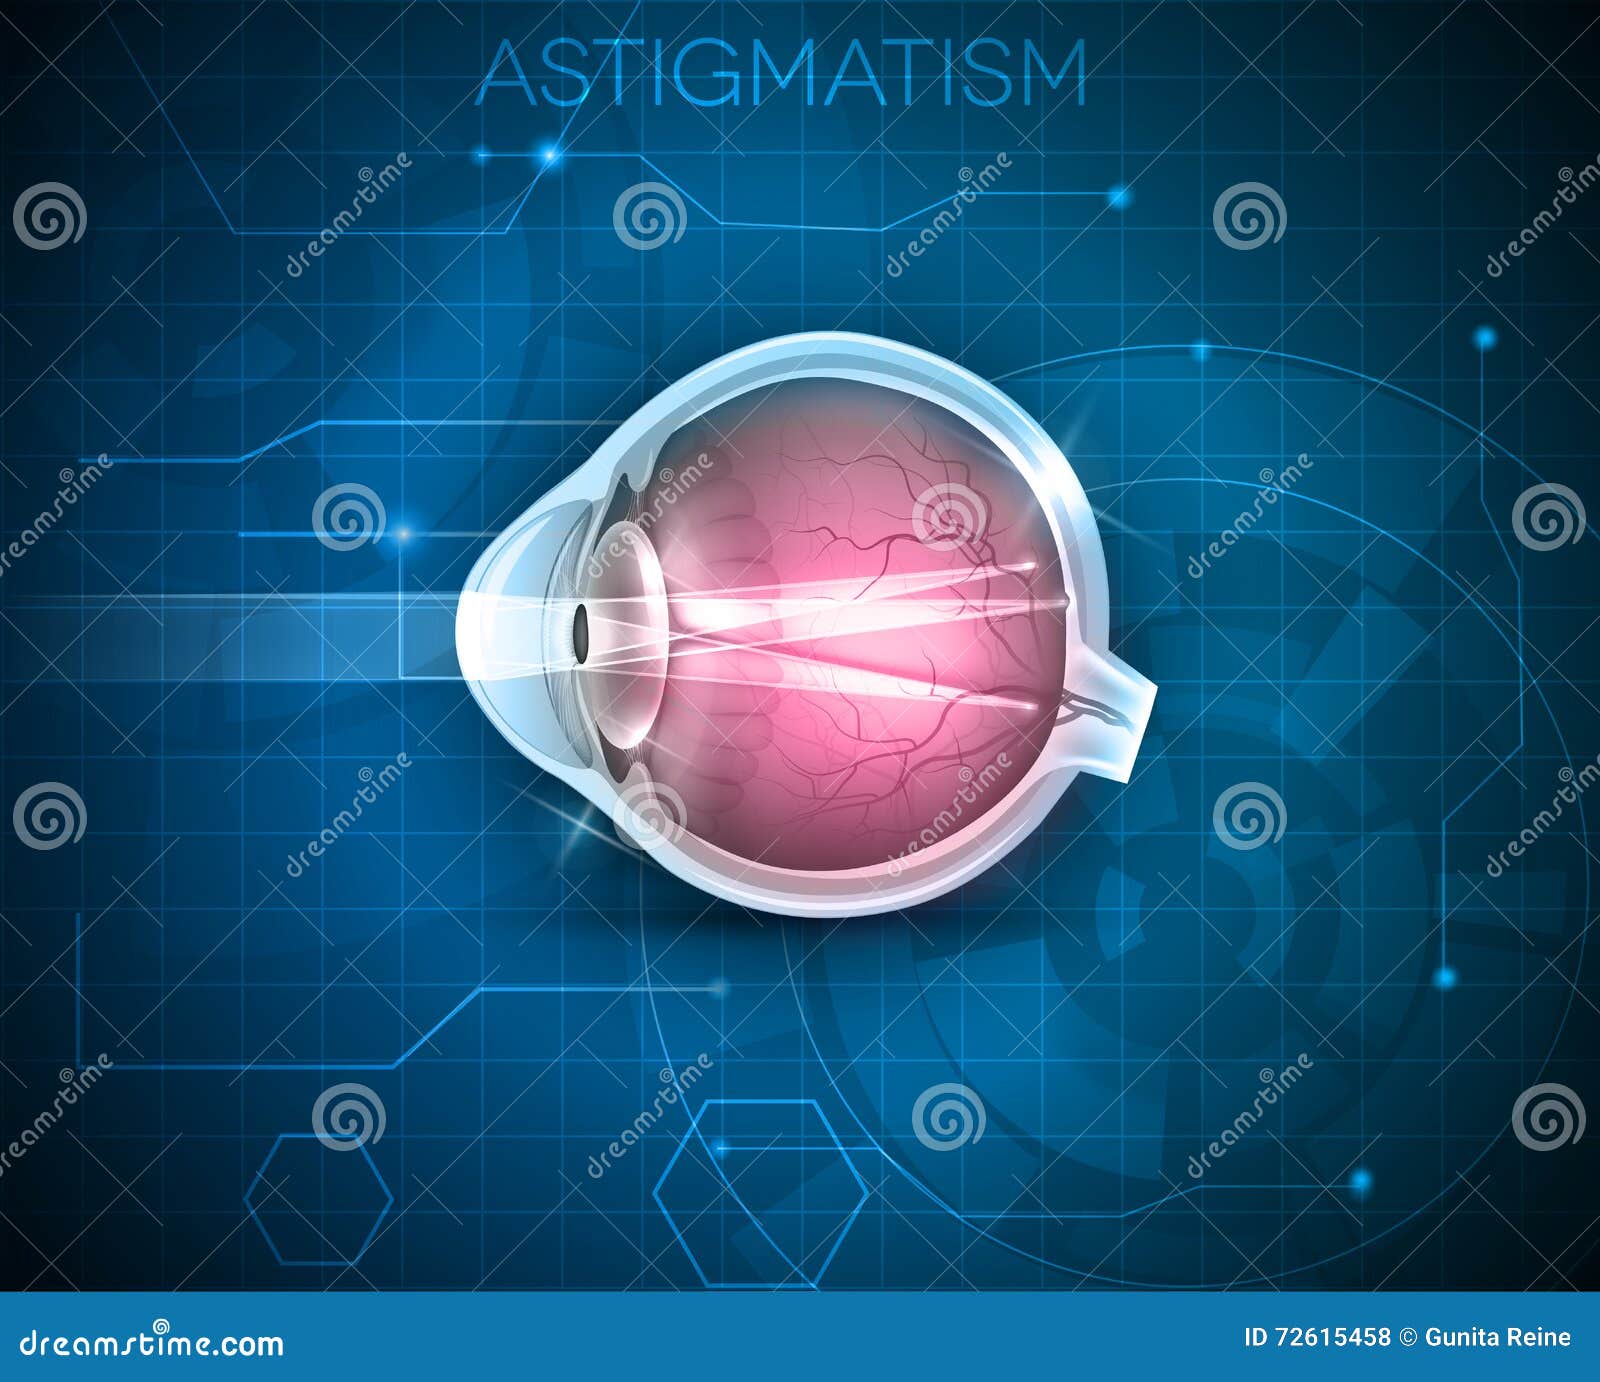 astigmatism la 100 de viziuni)